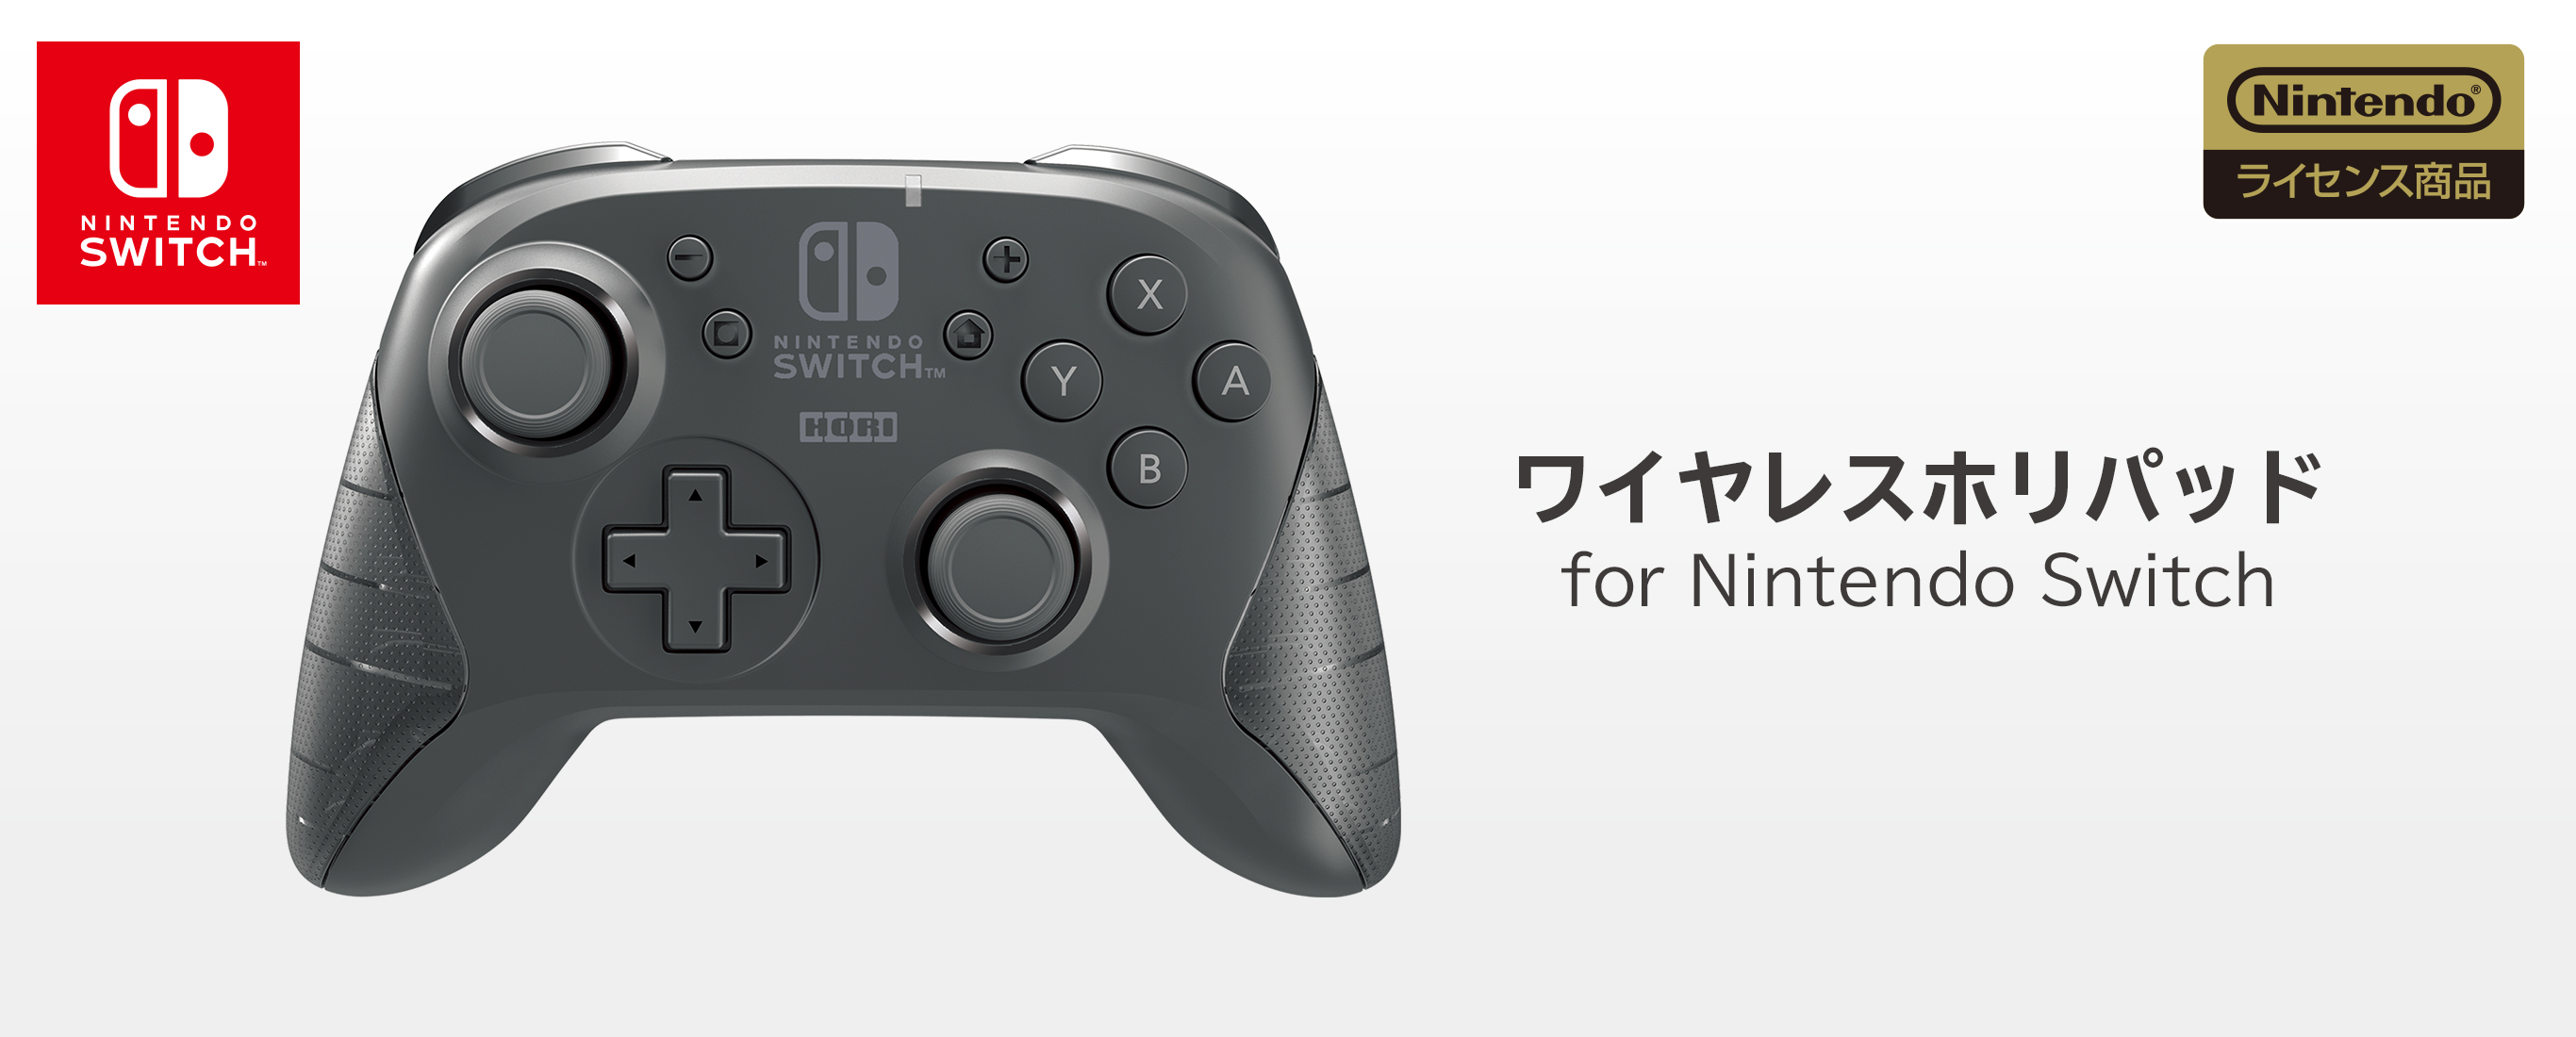 株式会社 HORI | ワイヤレスホリパッド for Nintendo Switch